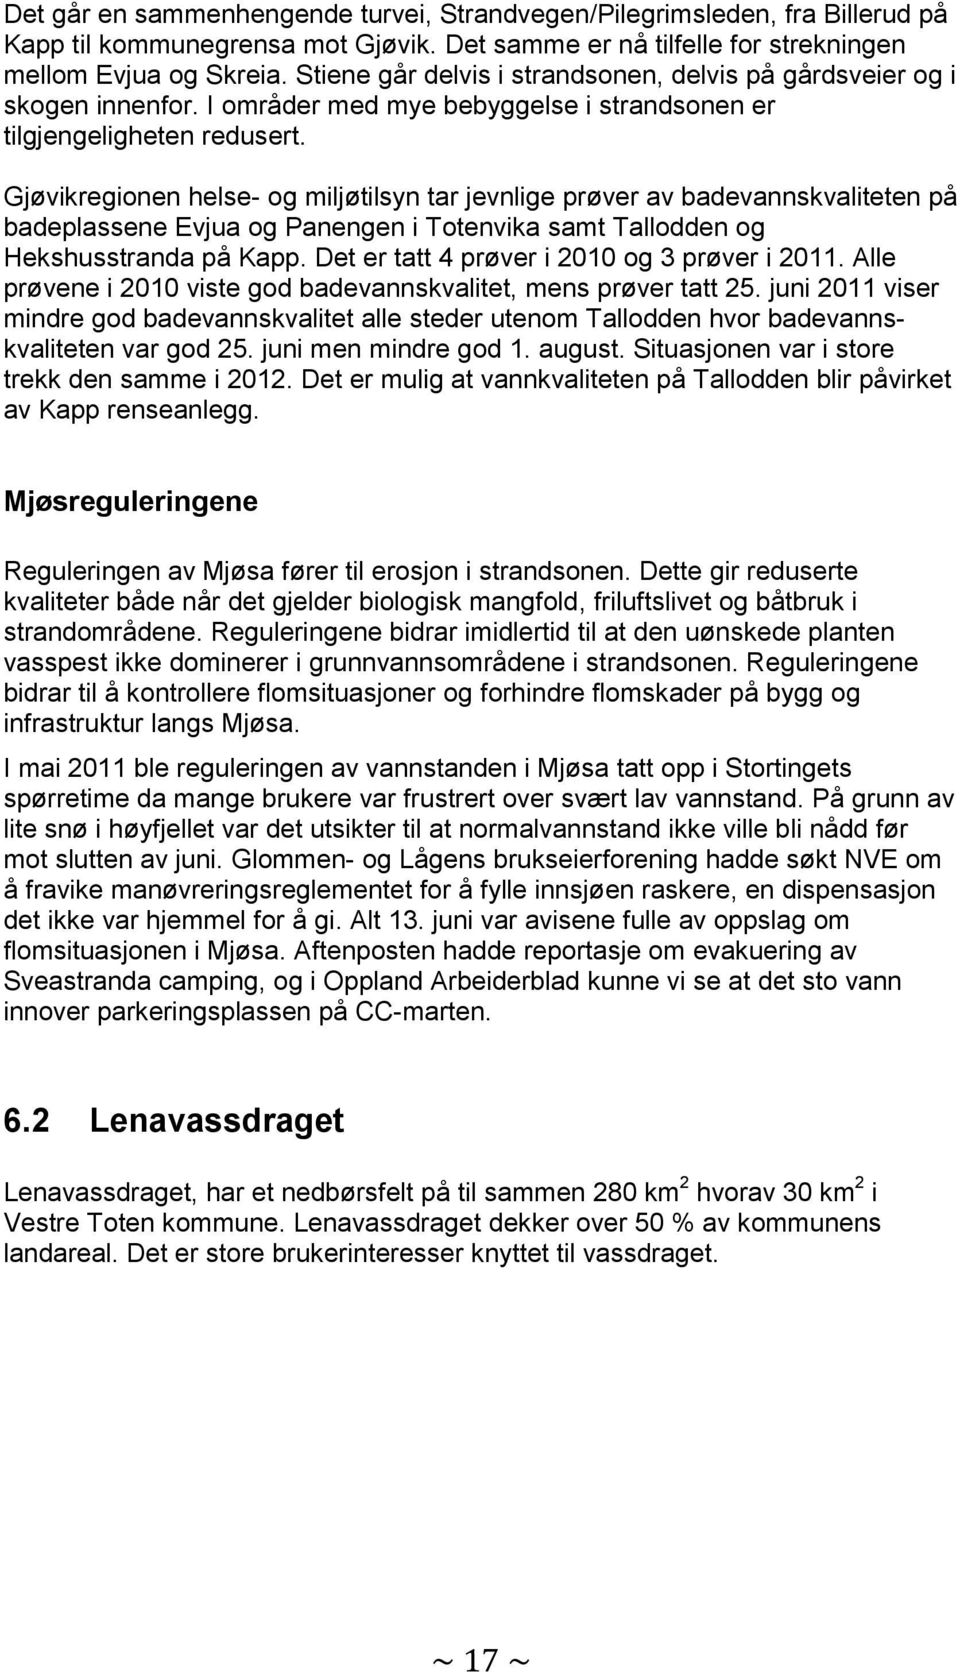 Gjøvikregionen helse- og miljøtilsyn tar jevnlige prøver av badevannskvaliteten på badeplassene Evjua og Panengen i Totenvika samt Tallodden og Hekshusstranda på Kapp.